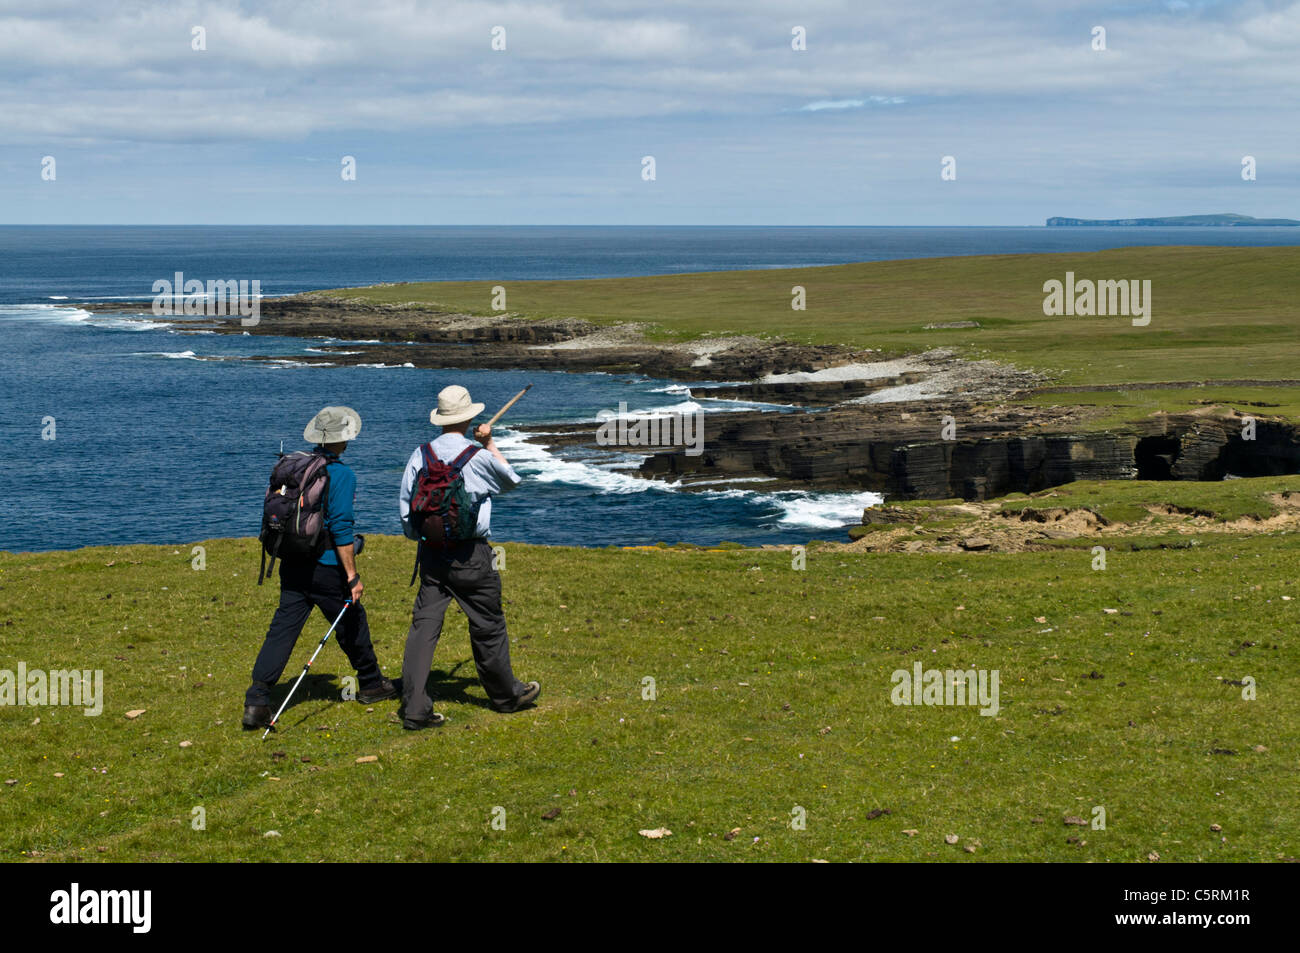 dh Iles écossaises ecosse ÎLE ROUSAY ORKNEY ISLES randonneurs touristiques randonnée pédestre côte royaume-uni vue mer été randonnée Banque D'Images